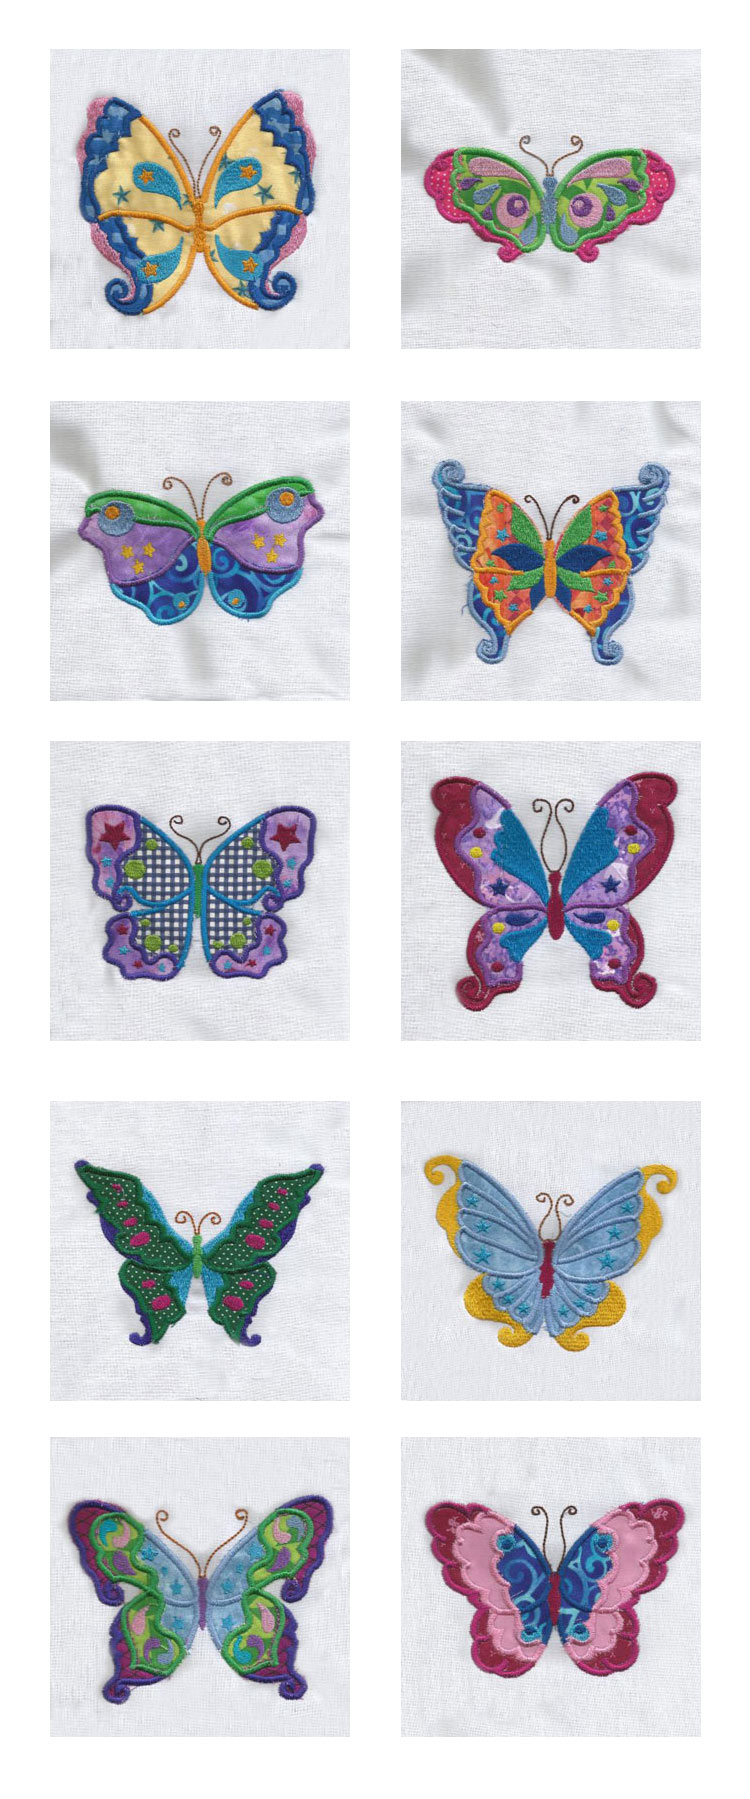 Colorful Applique Butterflies Embroidery Machine Design Details